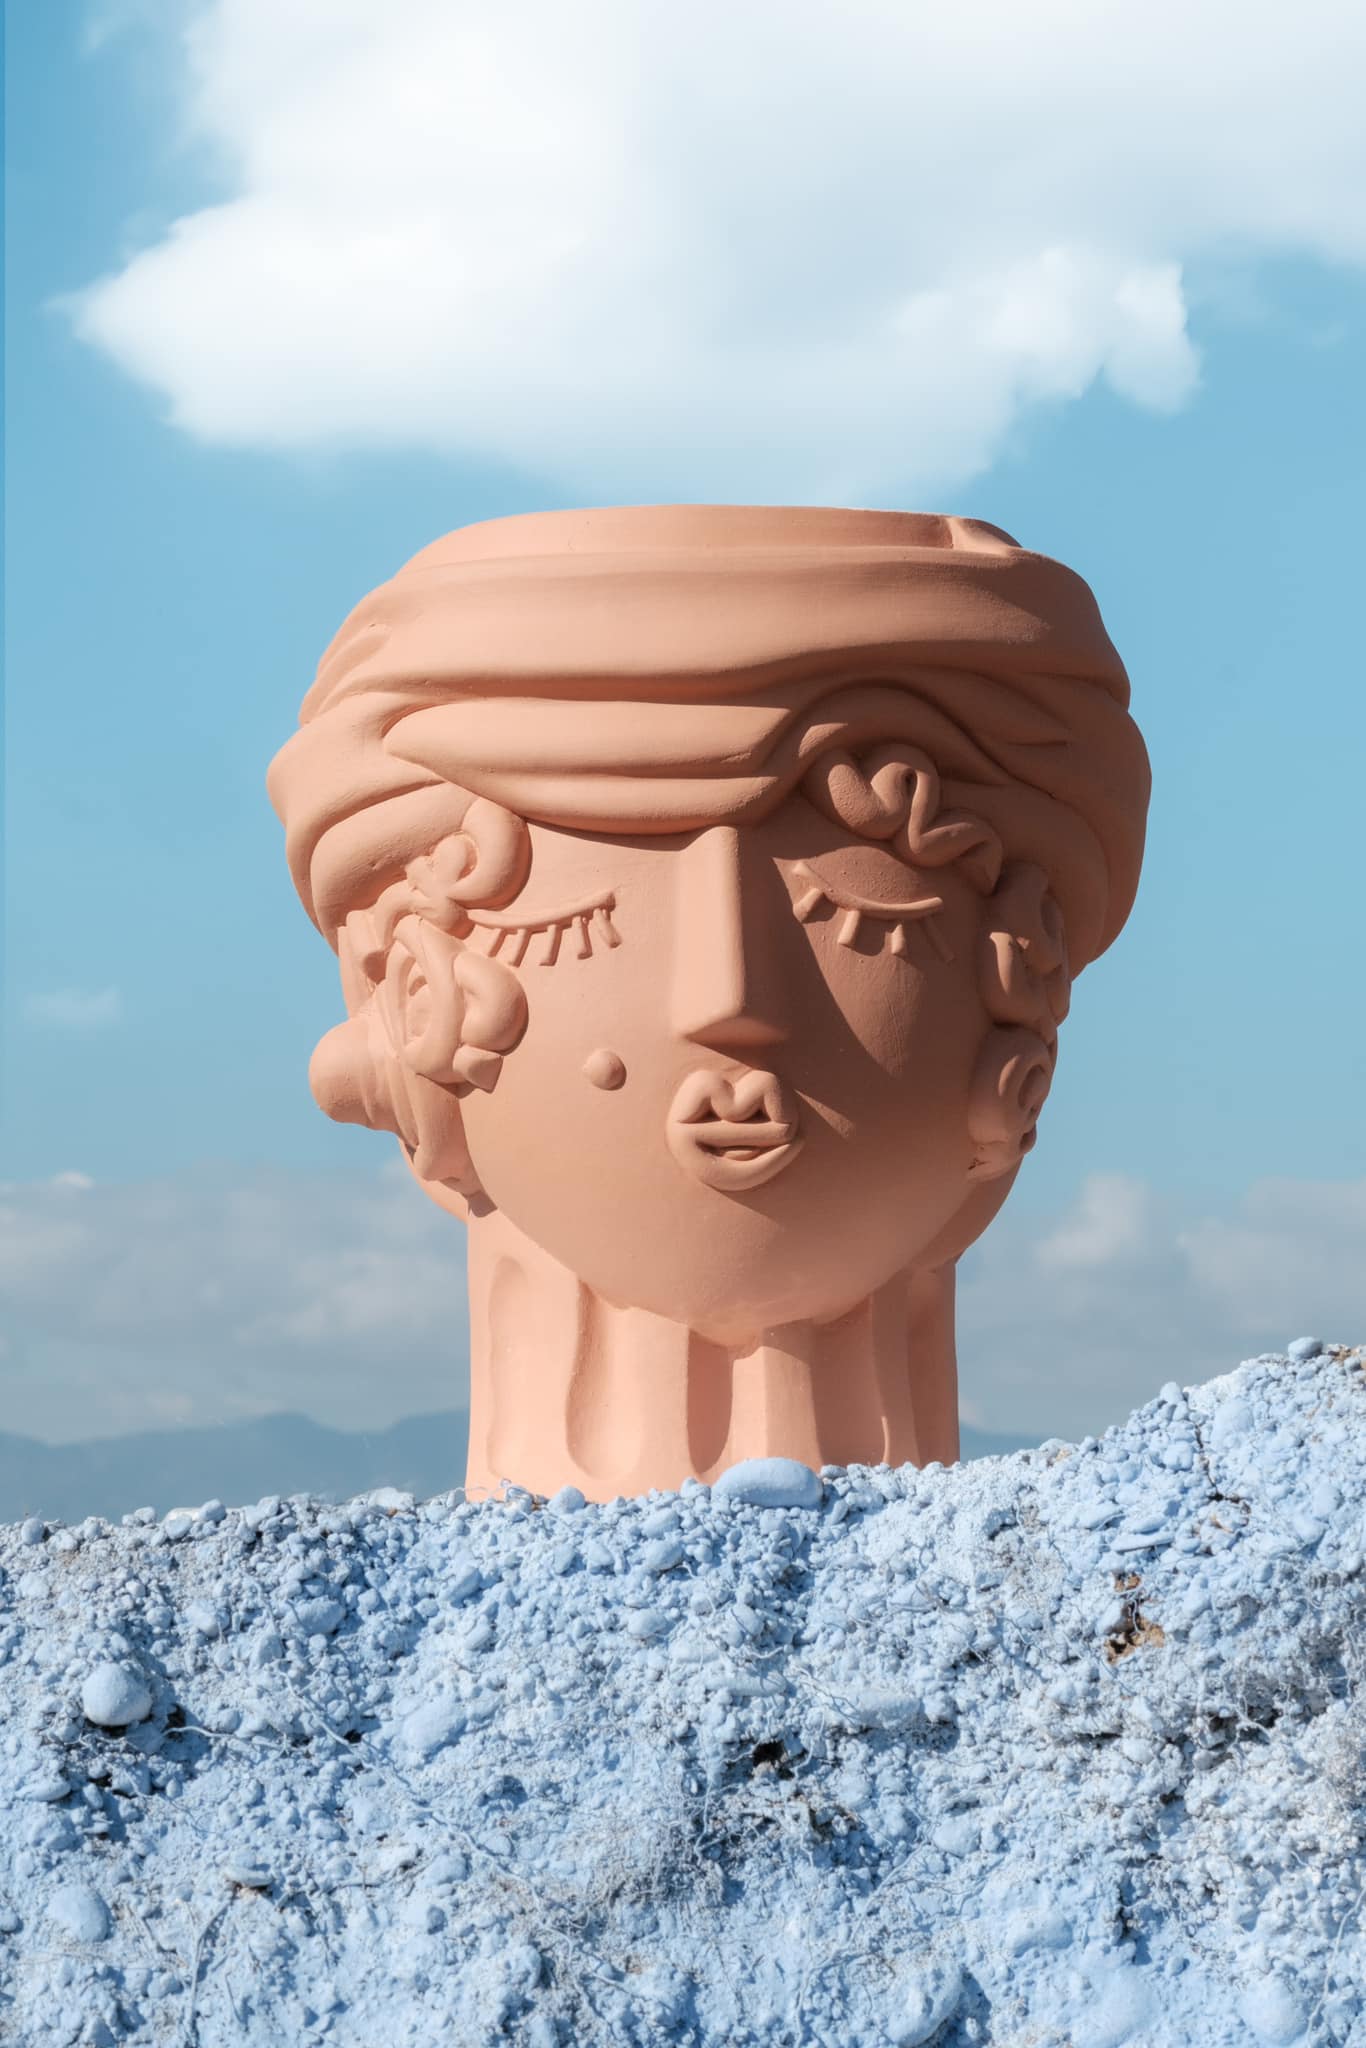 Seletti Magna Graecia Terracotta Vase Woman 